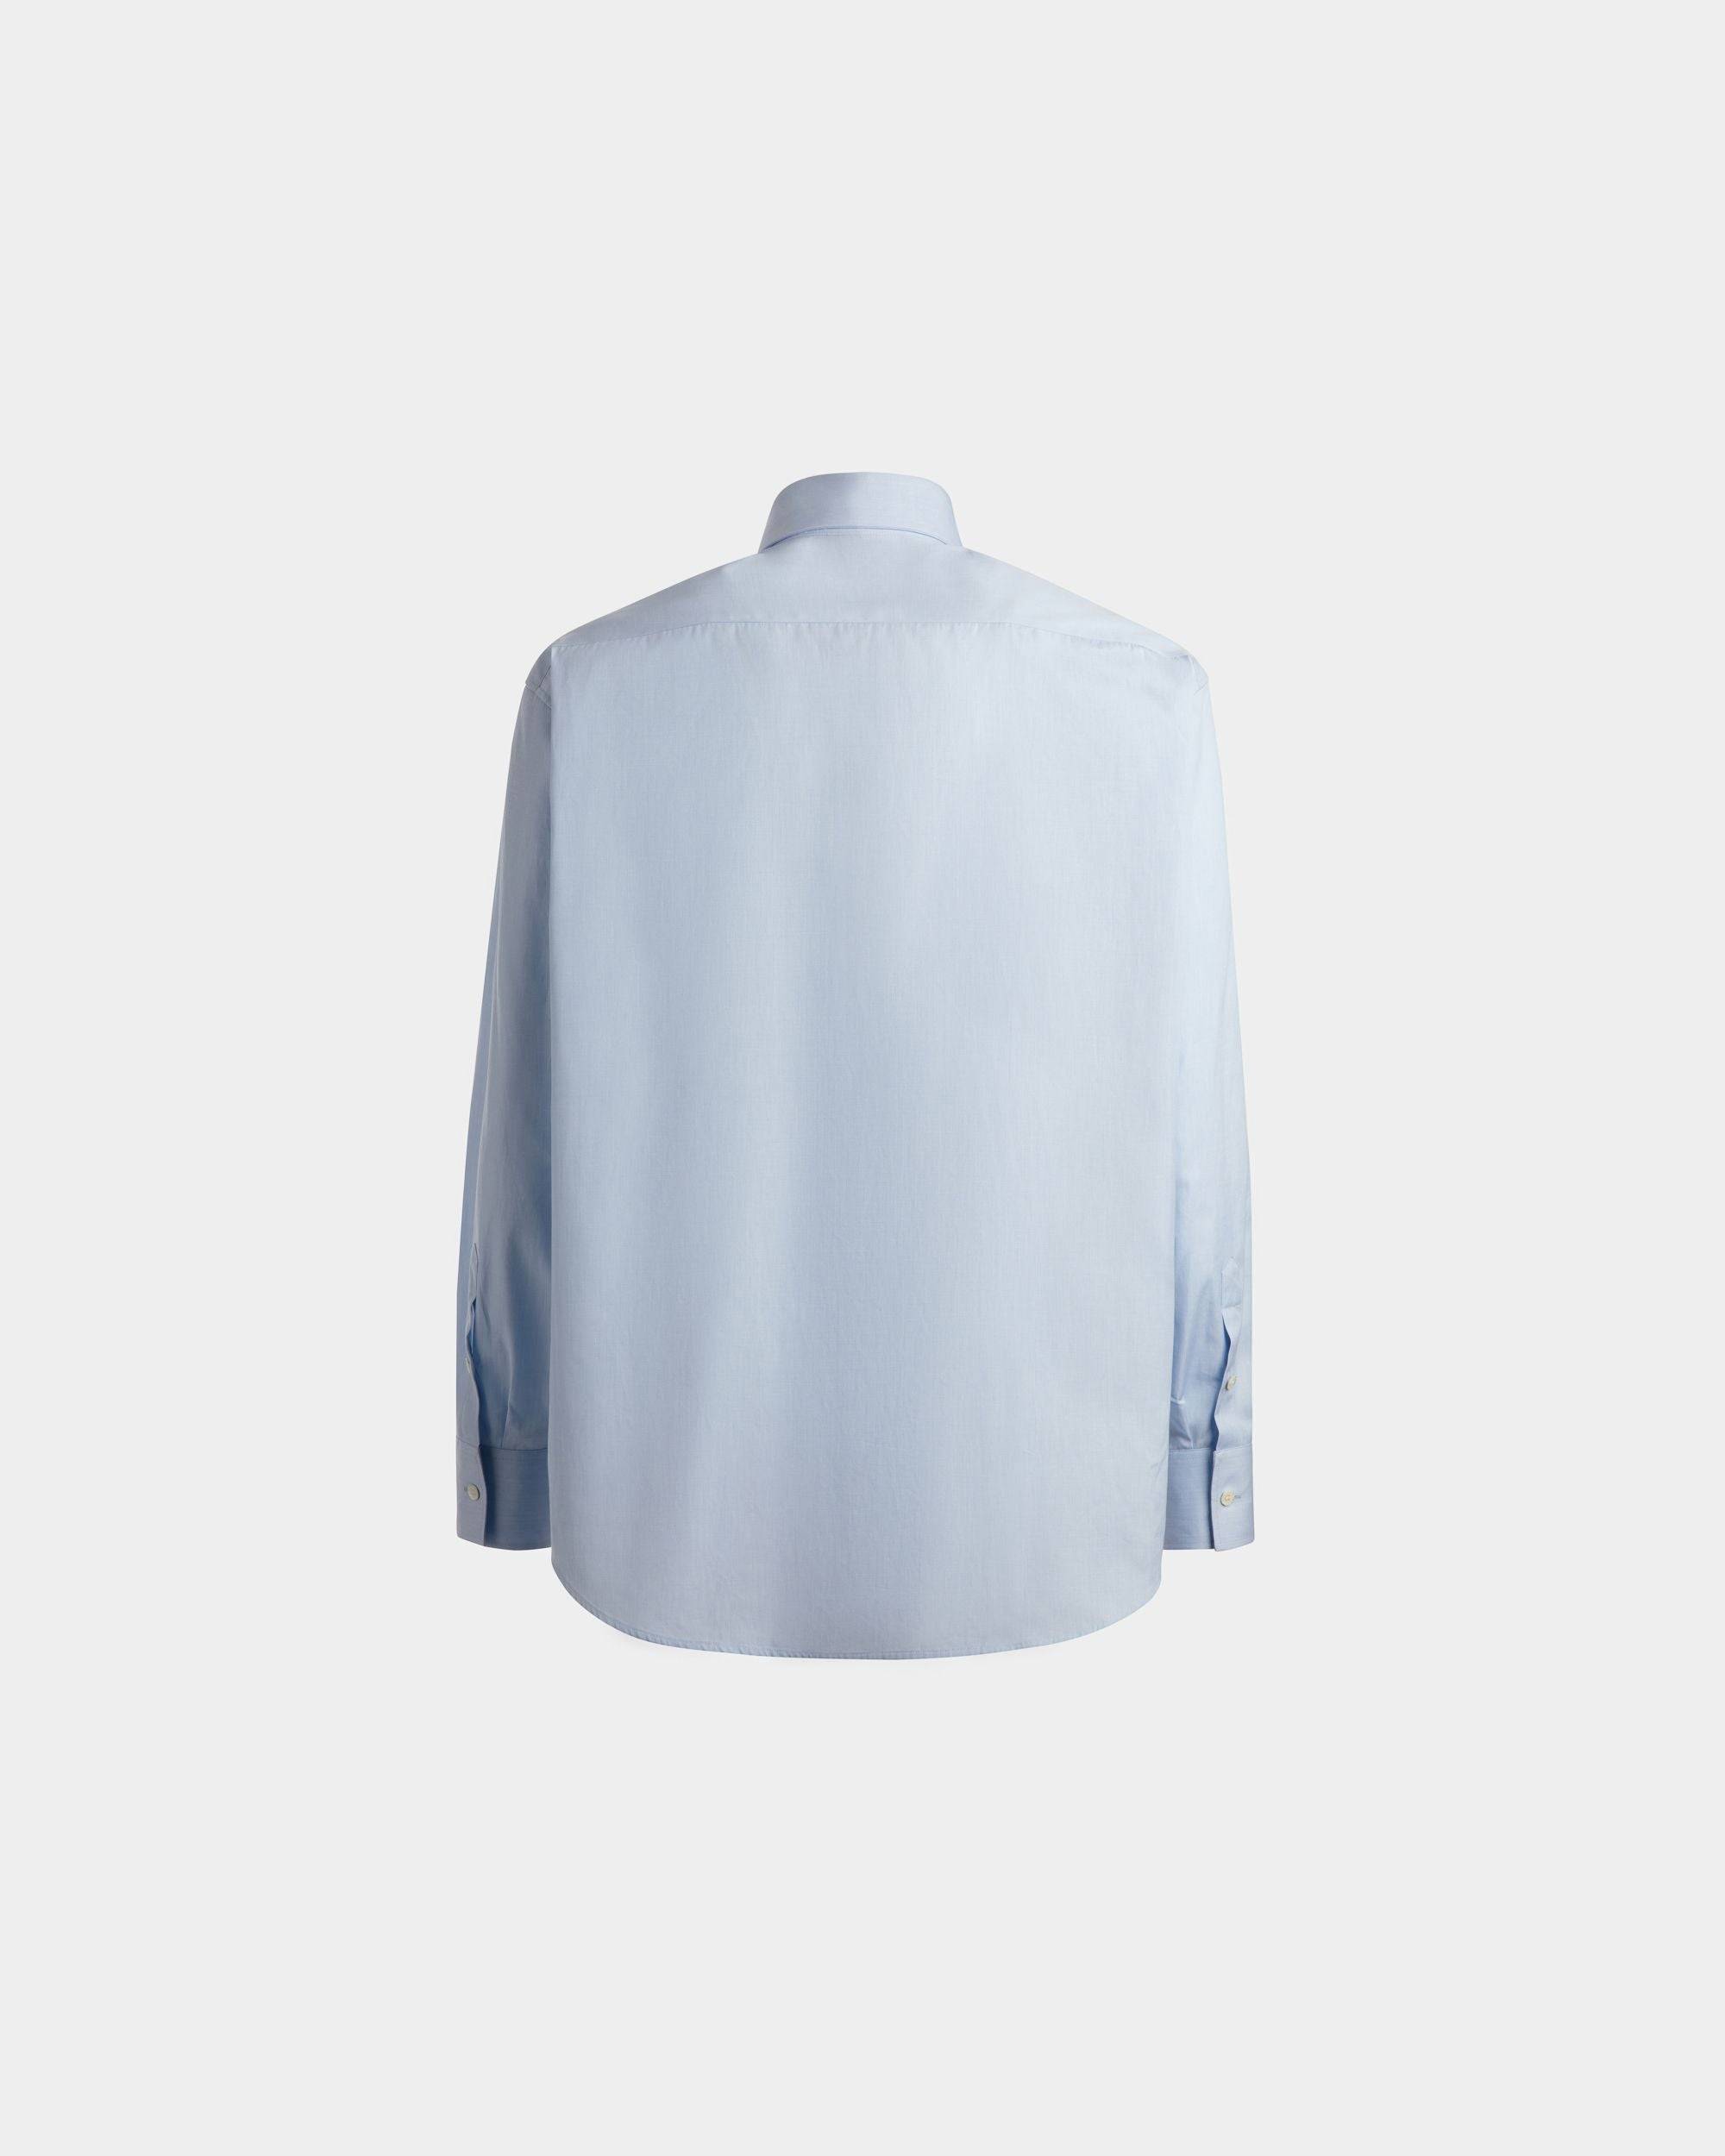 Men's Shirt in Light Blue Cotton | Bally | Still Life Back